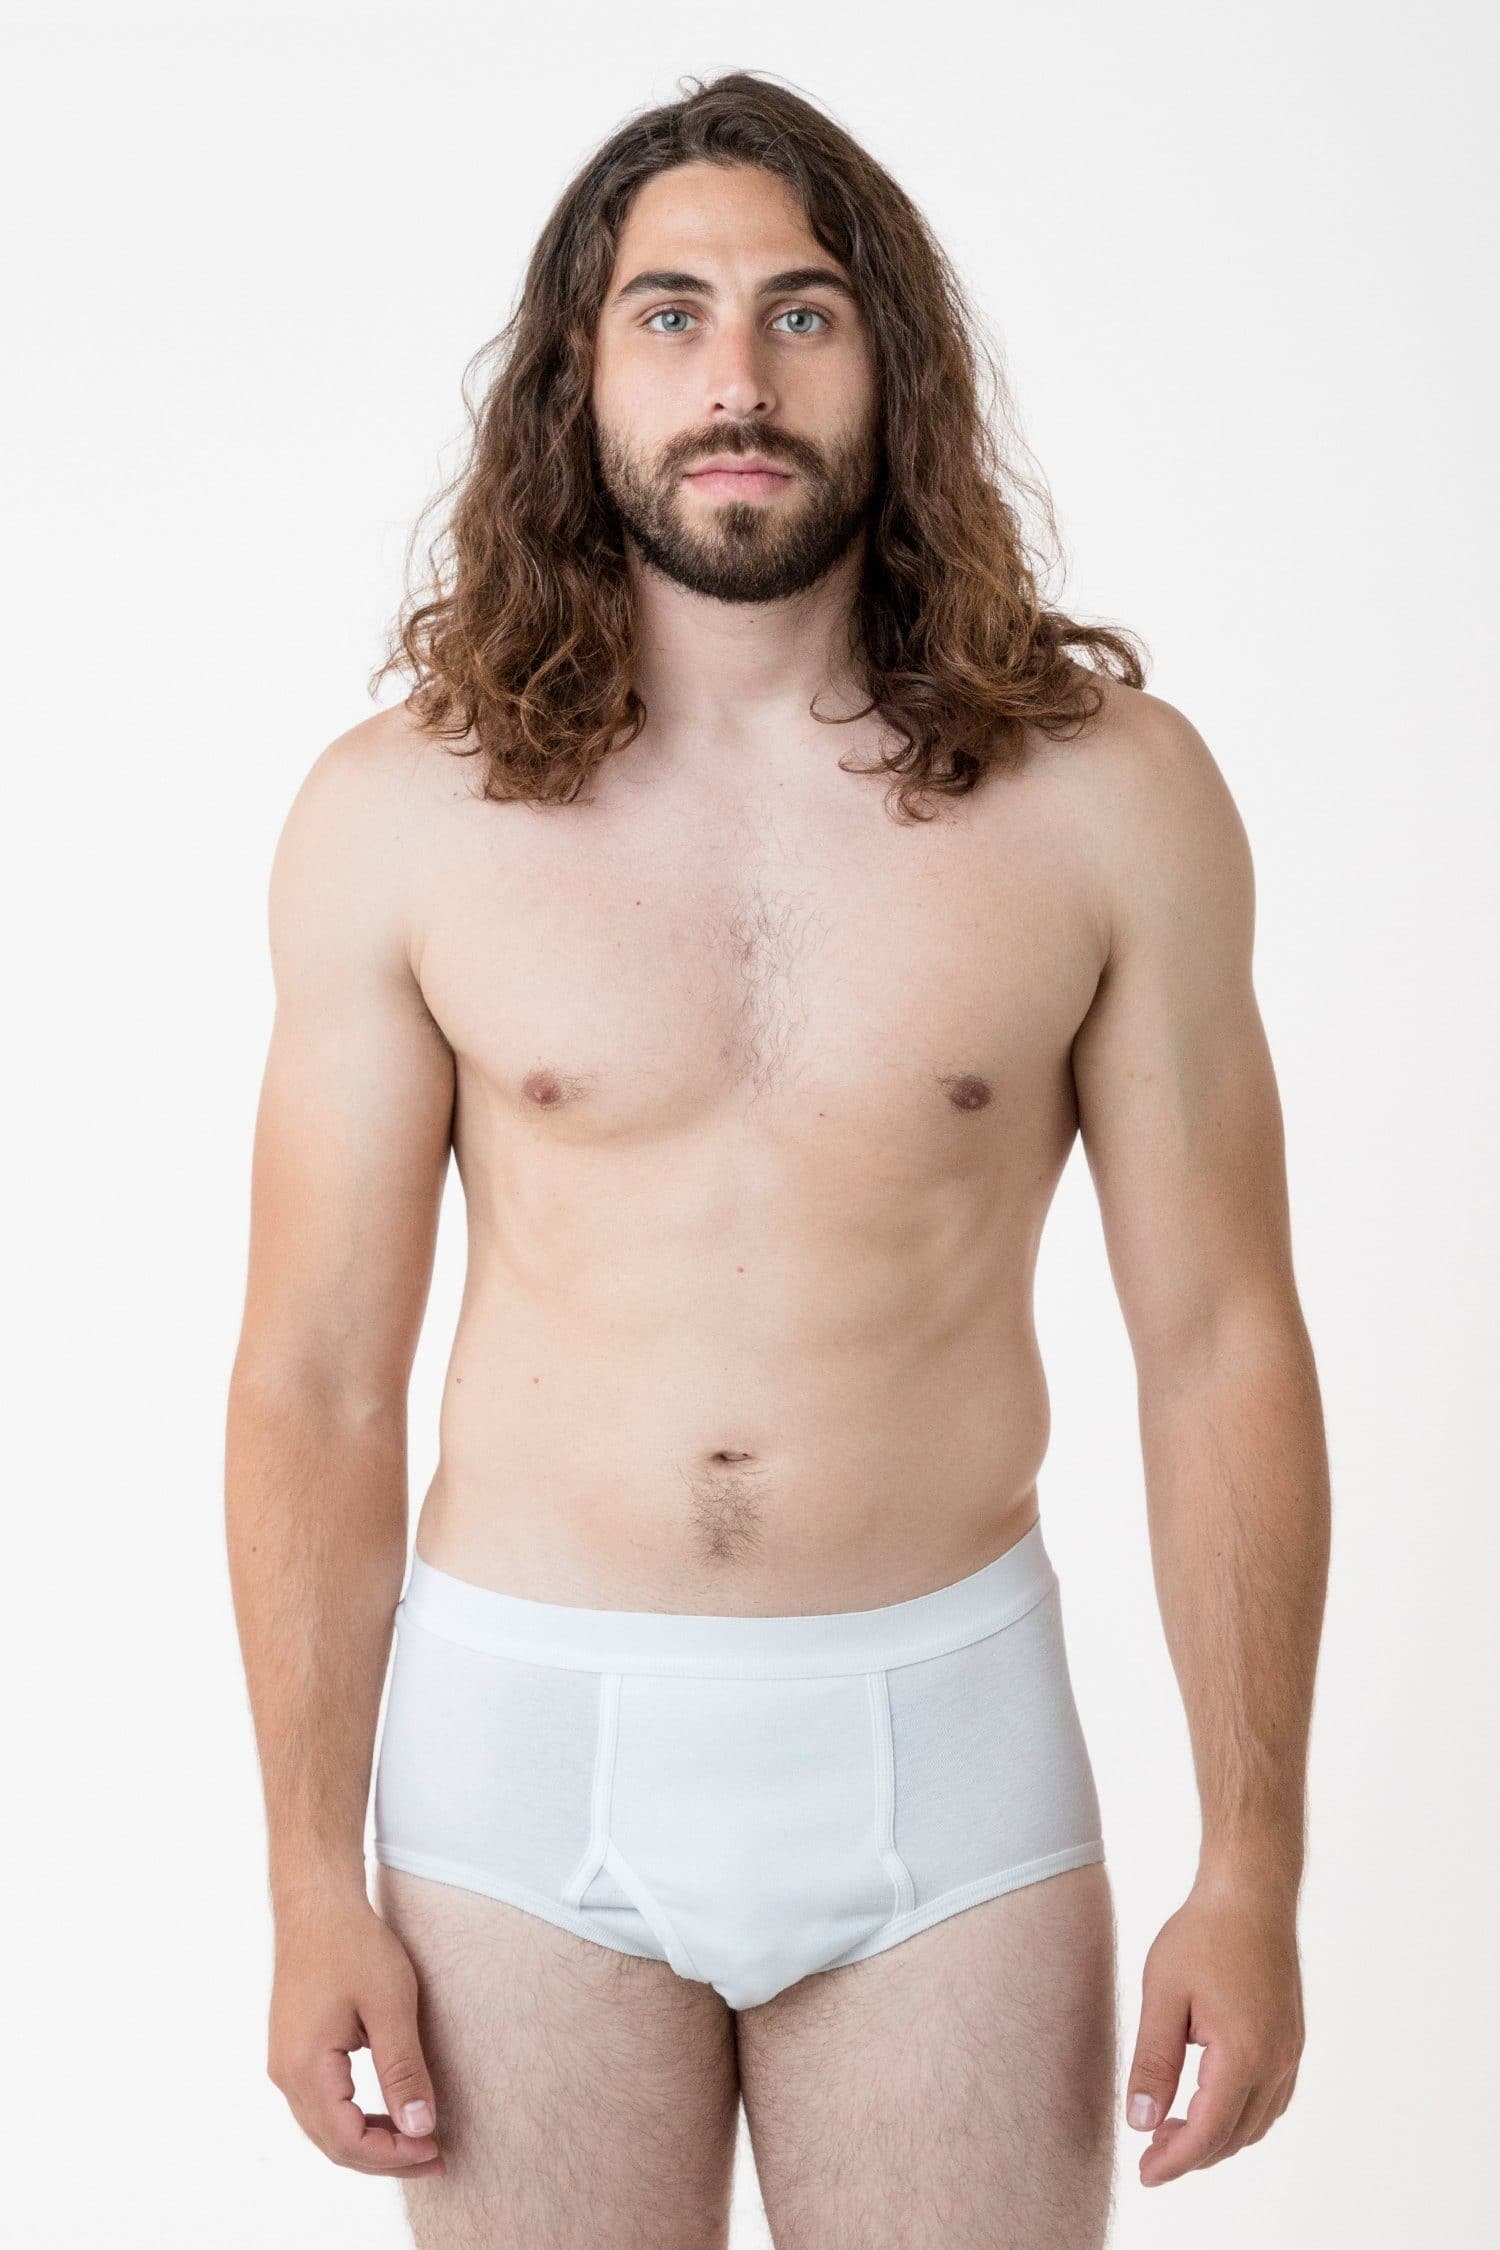 Men's underwear - Buy underpants for men here